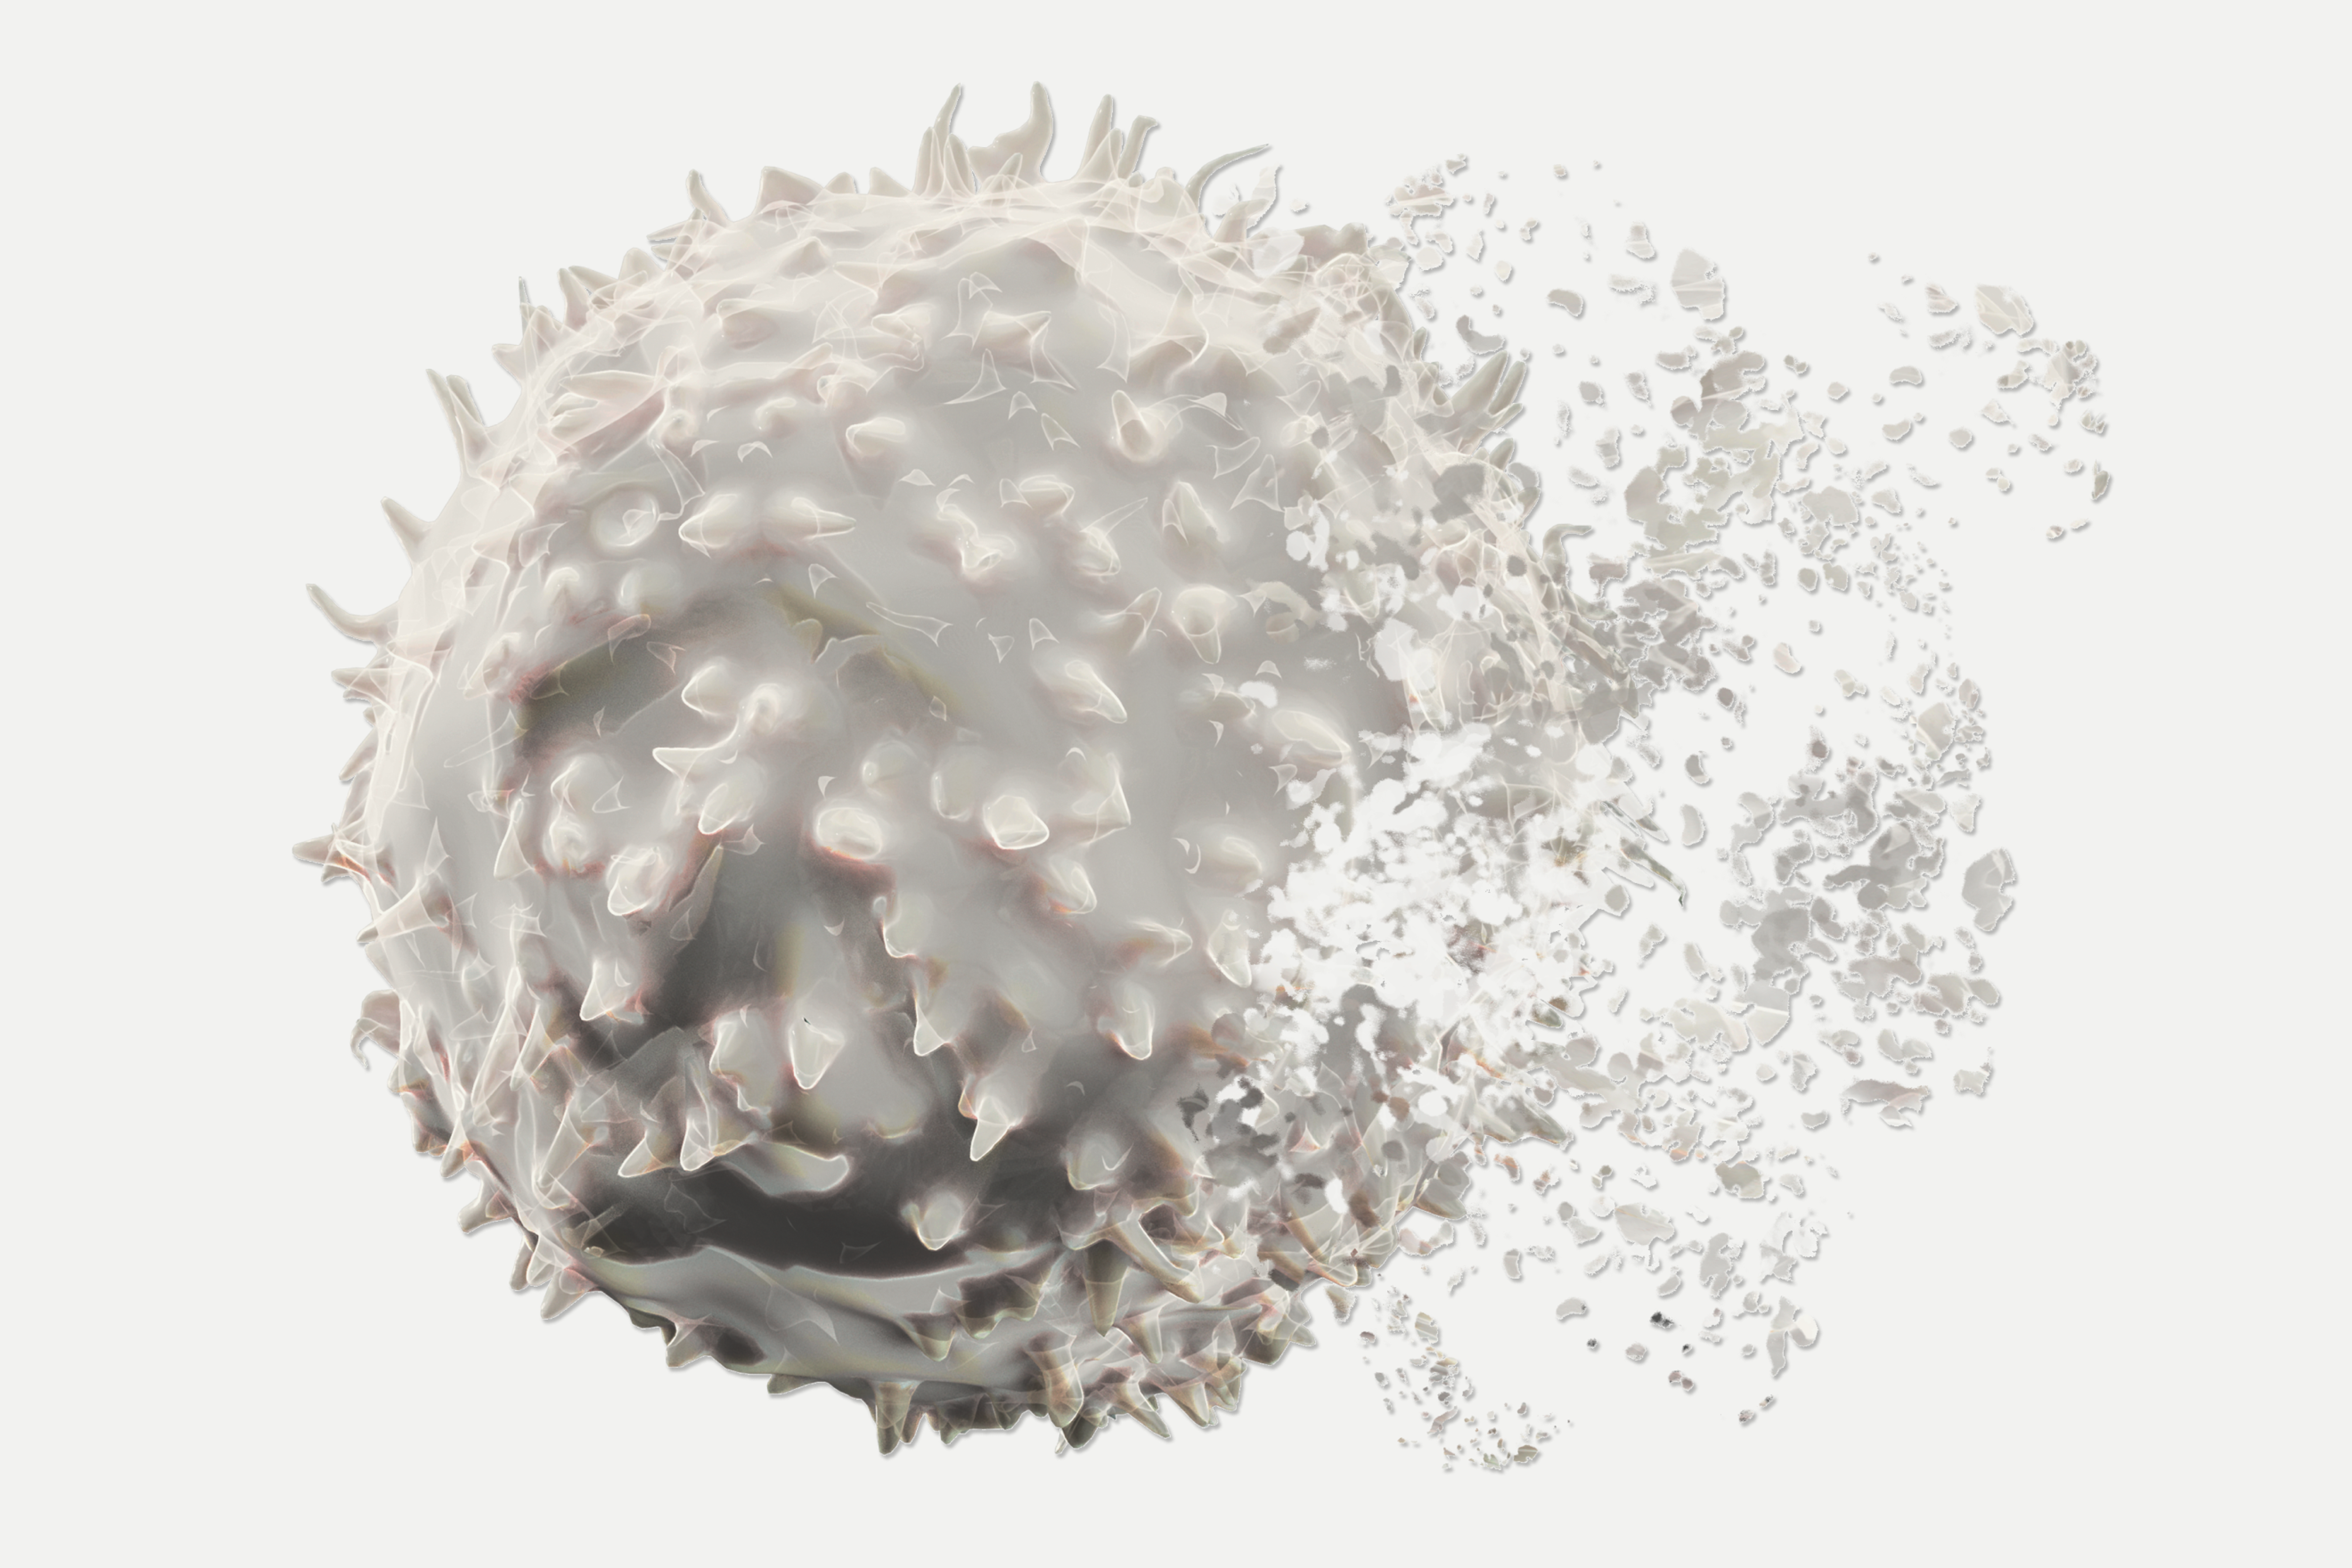 Dissolving T-Cell. Immunosenescence